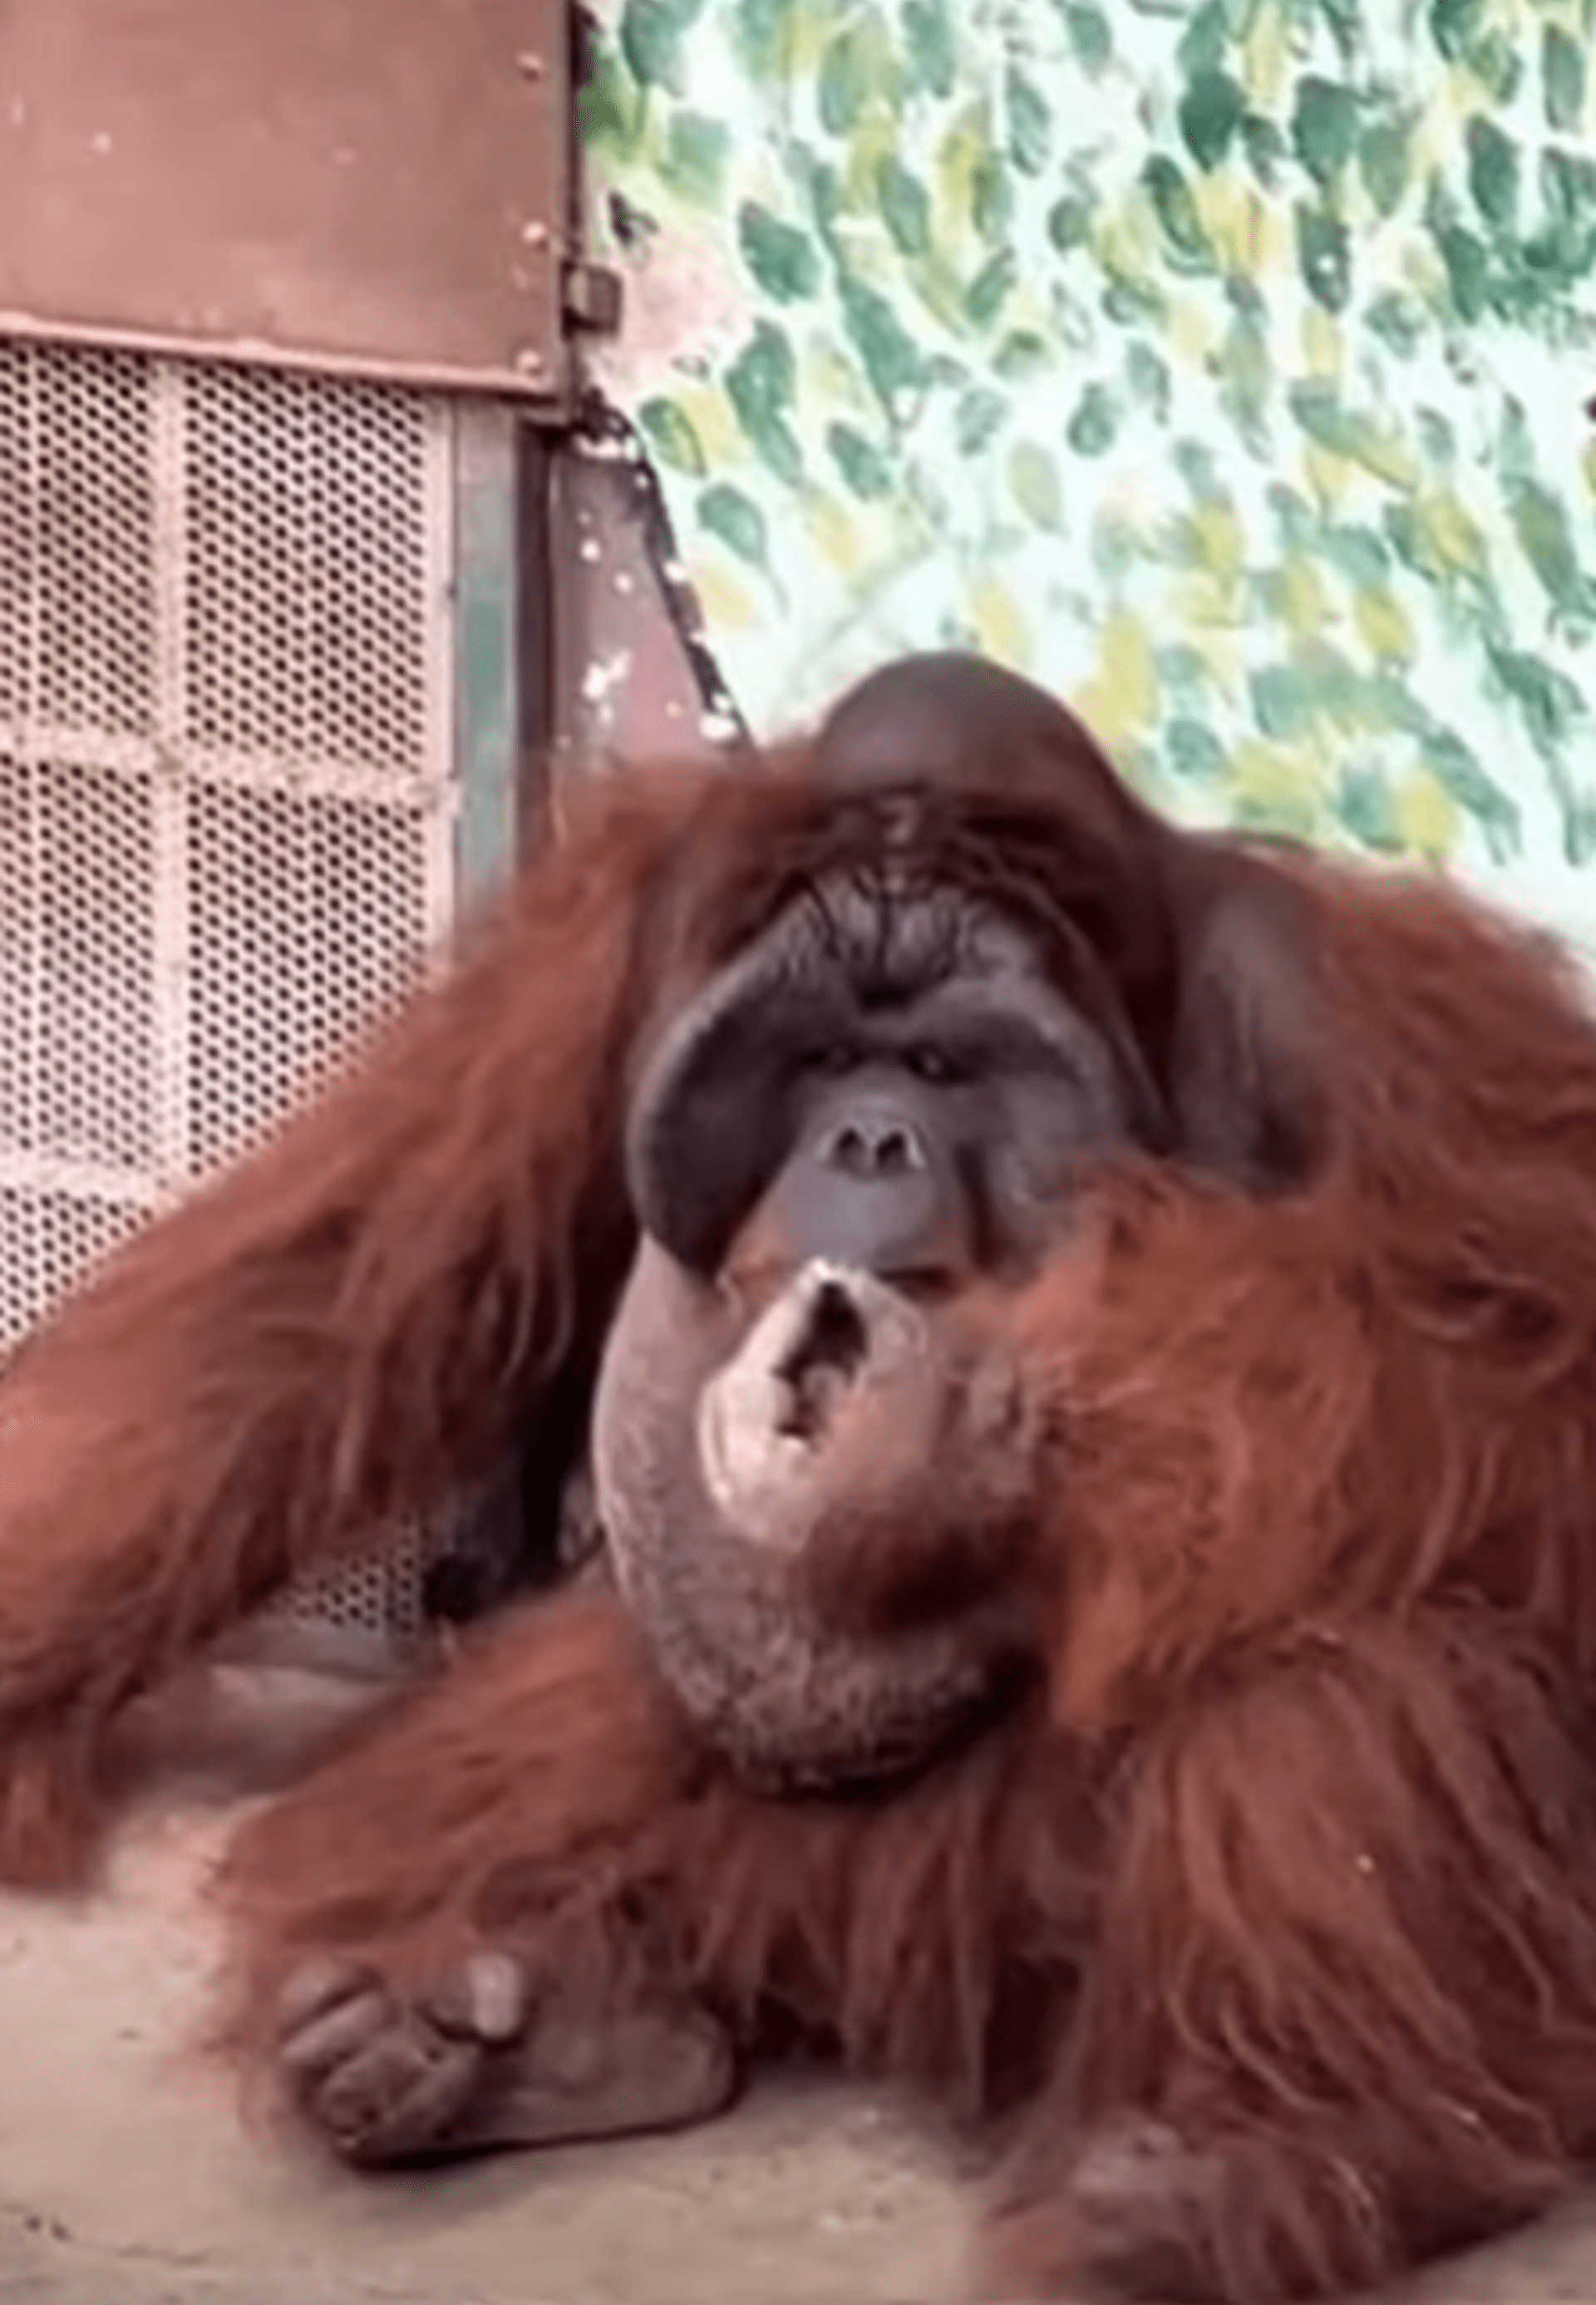 Kouřící orangutan vyvolal vlnu kritiky